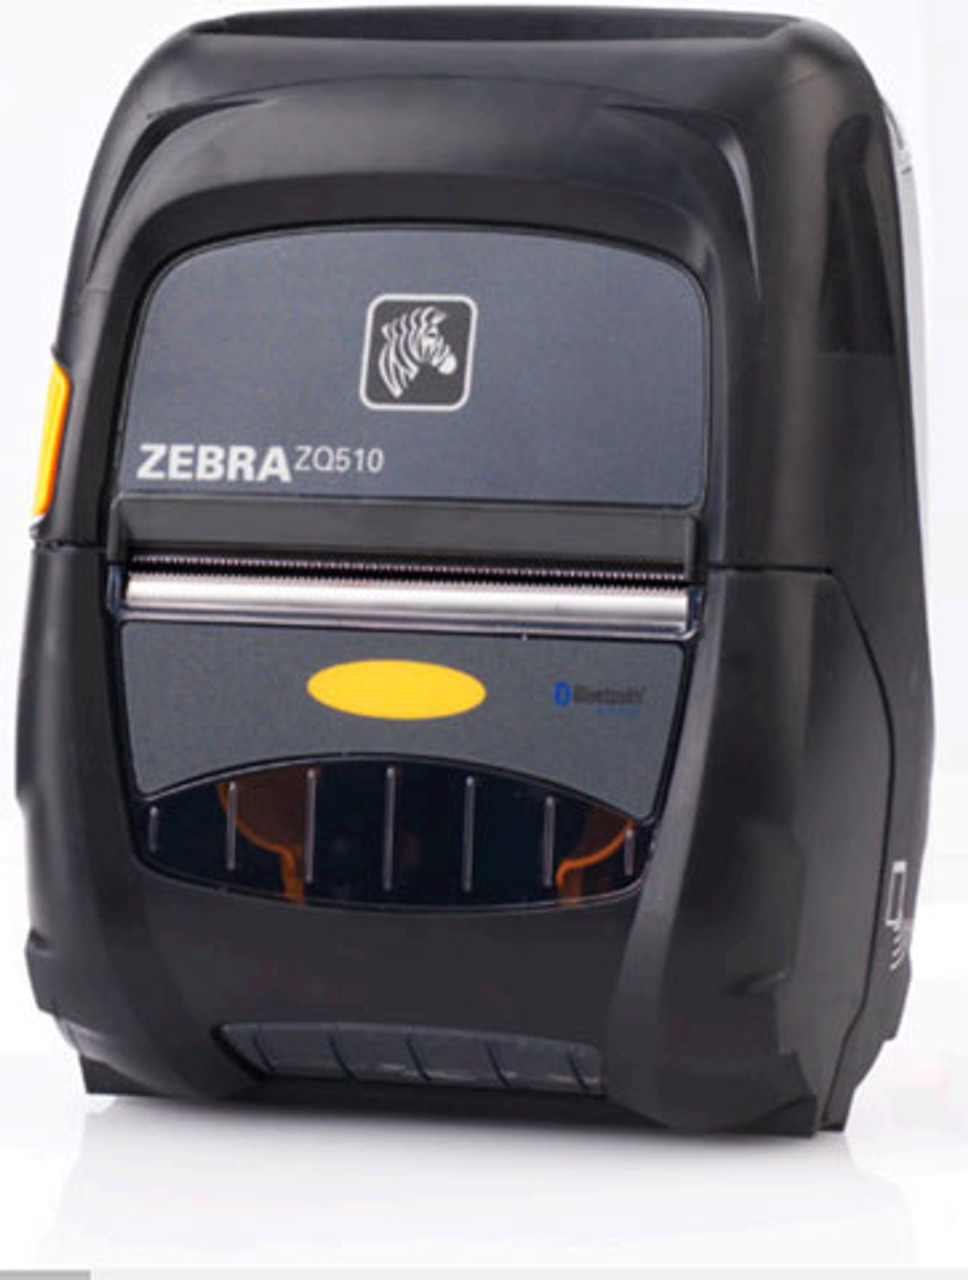 Zebra Zq510 Mobile Printer 3 Dual Radio Active Nfc Zq51 Aun0100 00 Zq51 Aun0100 00 2299